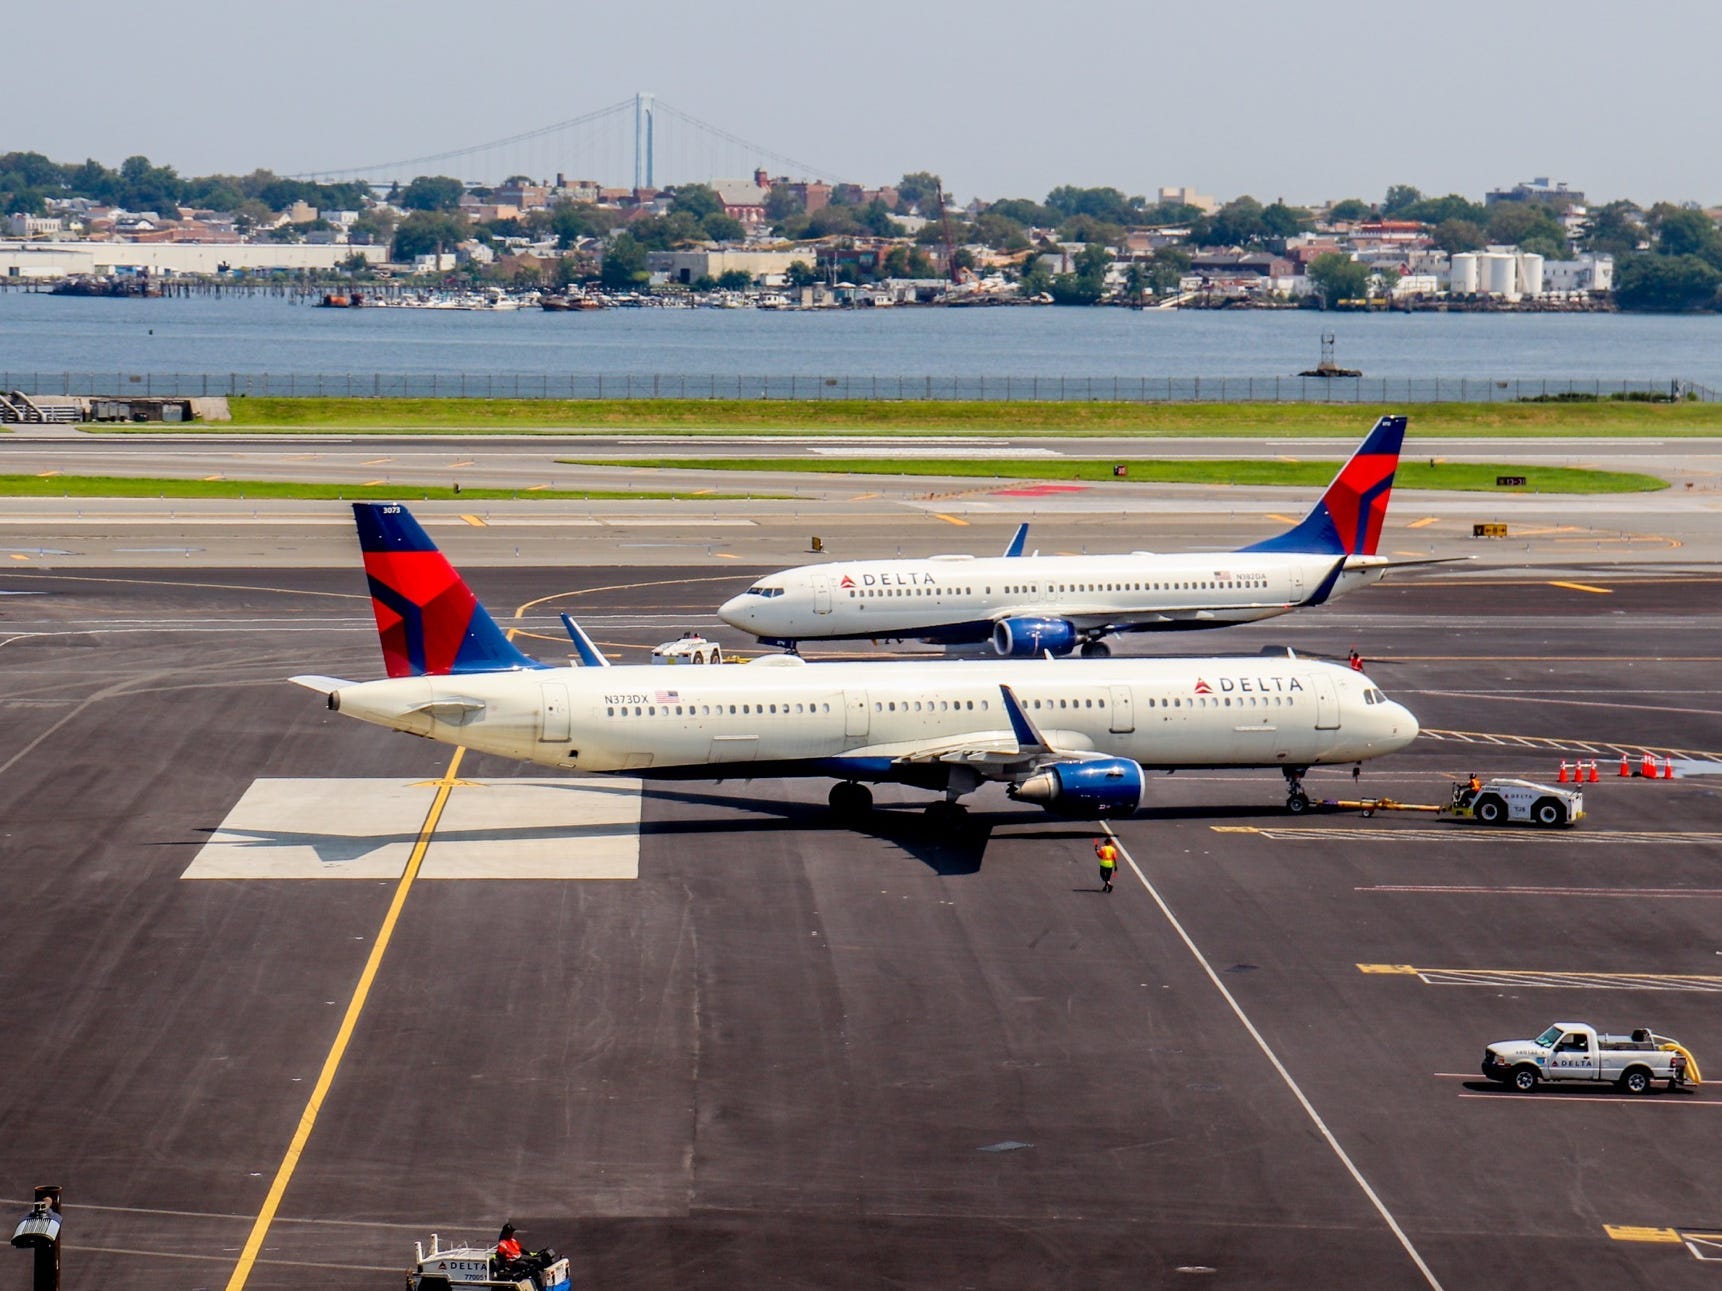 Touring del nuovo terminal di Delta Air Lines all'aeroporto LaGuardia — Delta Hard Hat Tour 2021